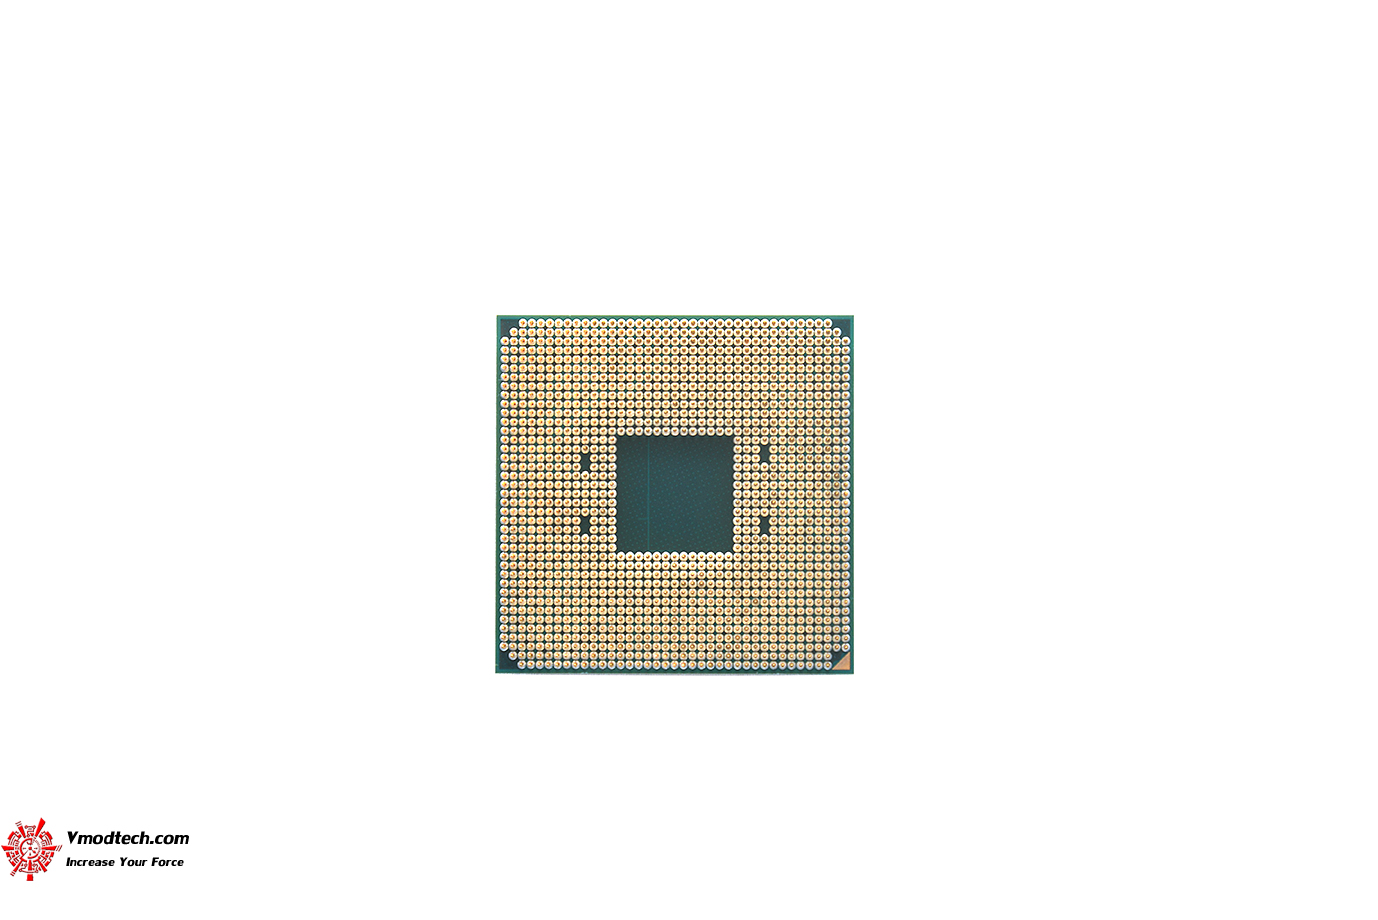 dsc 6588 AMD RYZEN 9 5900X PROCESSOR REVIEW